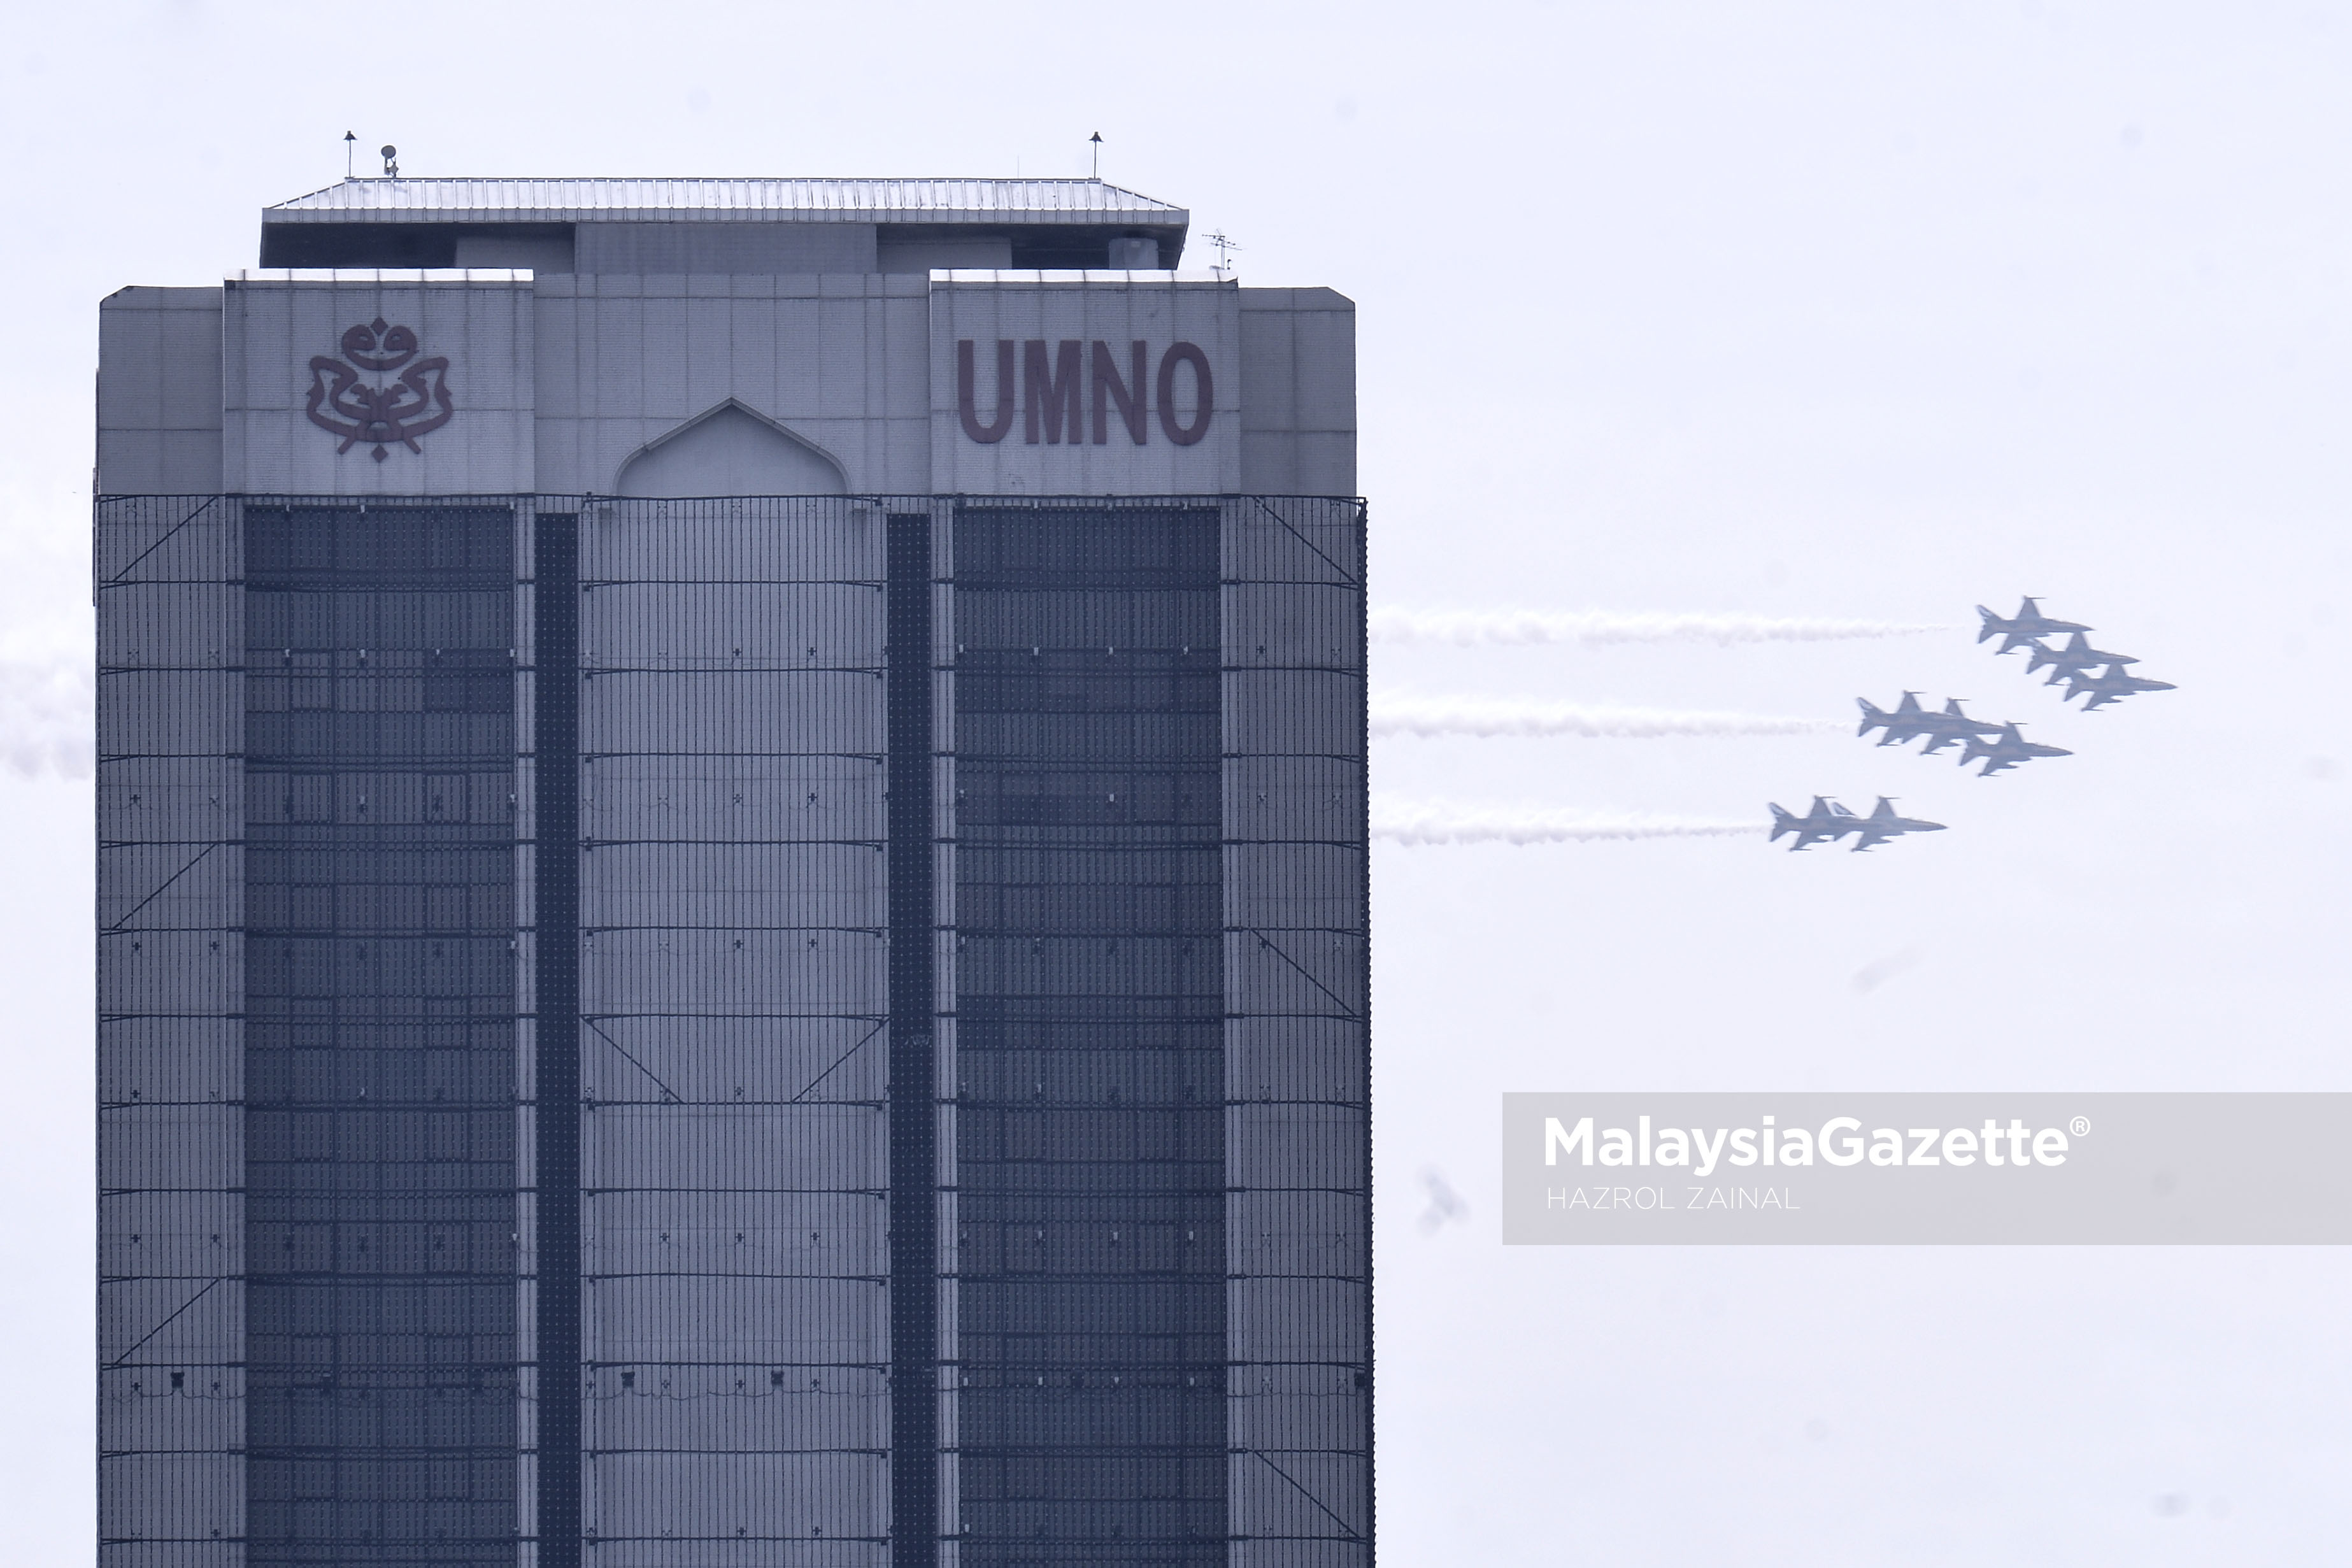 Pesawat Pejuang Korea Selatan, Black Eagle T-50 melepasi bangunan Pusat Dagangan Dunia Putra (PWTC) ketika melalui ruang udara sekitar Kuala Lumpur. foto MOHD HAZROL ZAINAL, 29 MAC 2017.